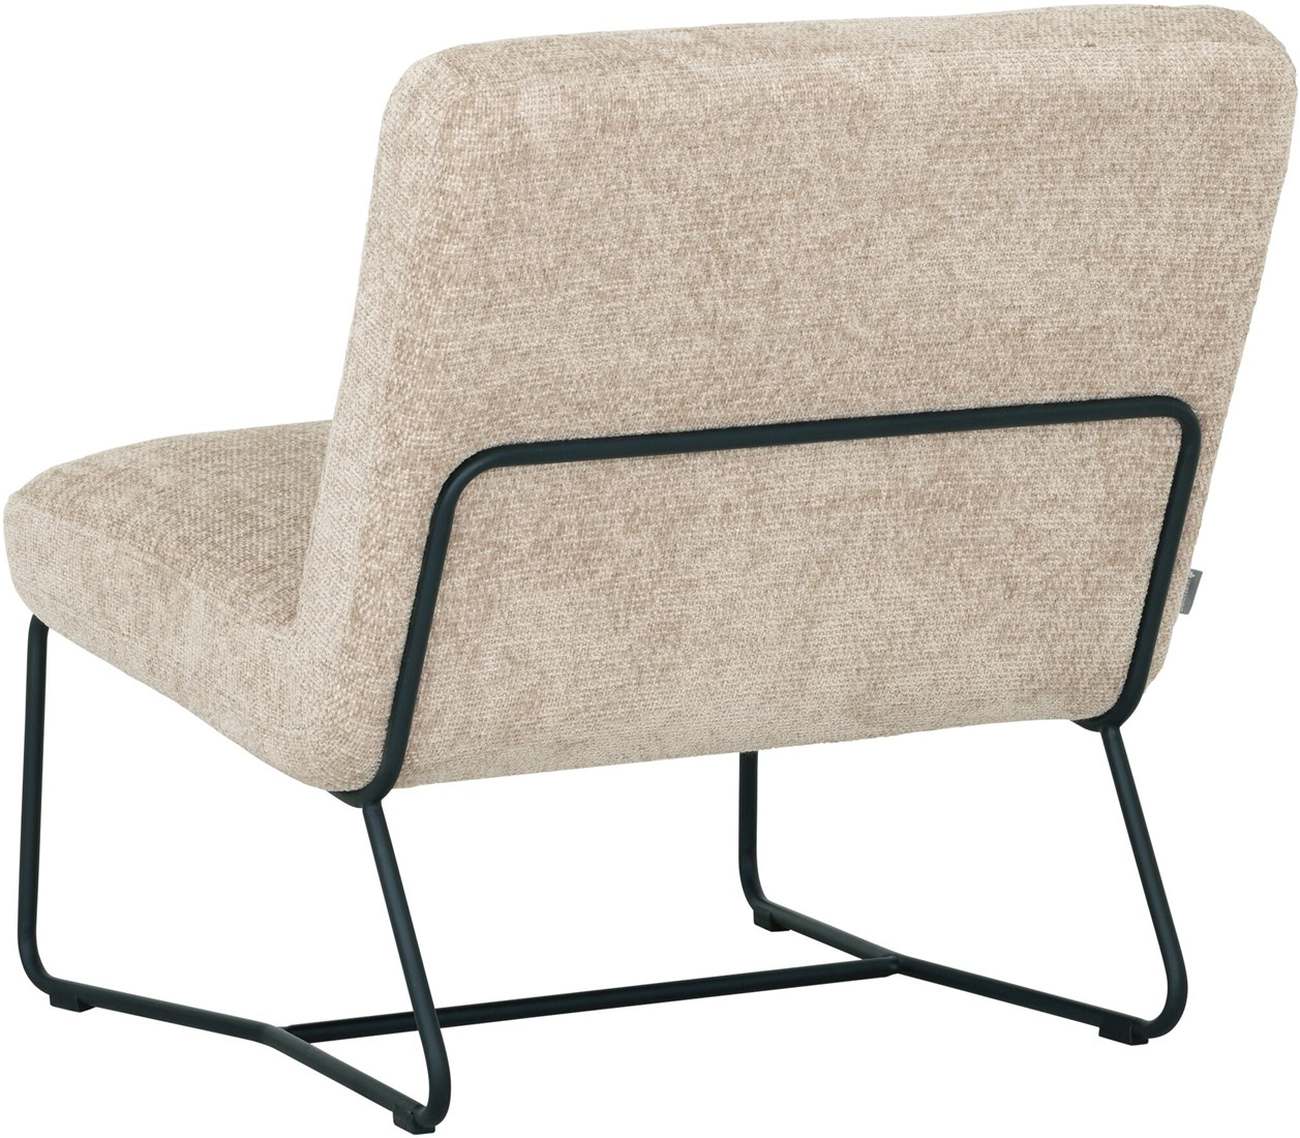 Der Sessel Zola überzeugt mit seinem modernen Design. Gefertigt wurde er aus Stoff, welcher einen Sand Farbton besitzt. Das Gestell ist aus Metall und hat eine schwarze Farbe. Der Sessel besitzt eine Größe von 80x78x80 cm.